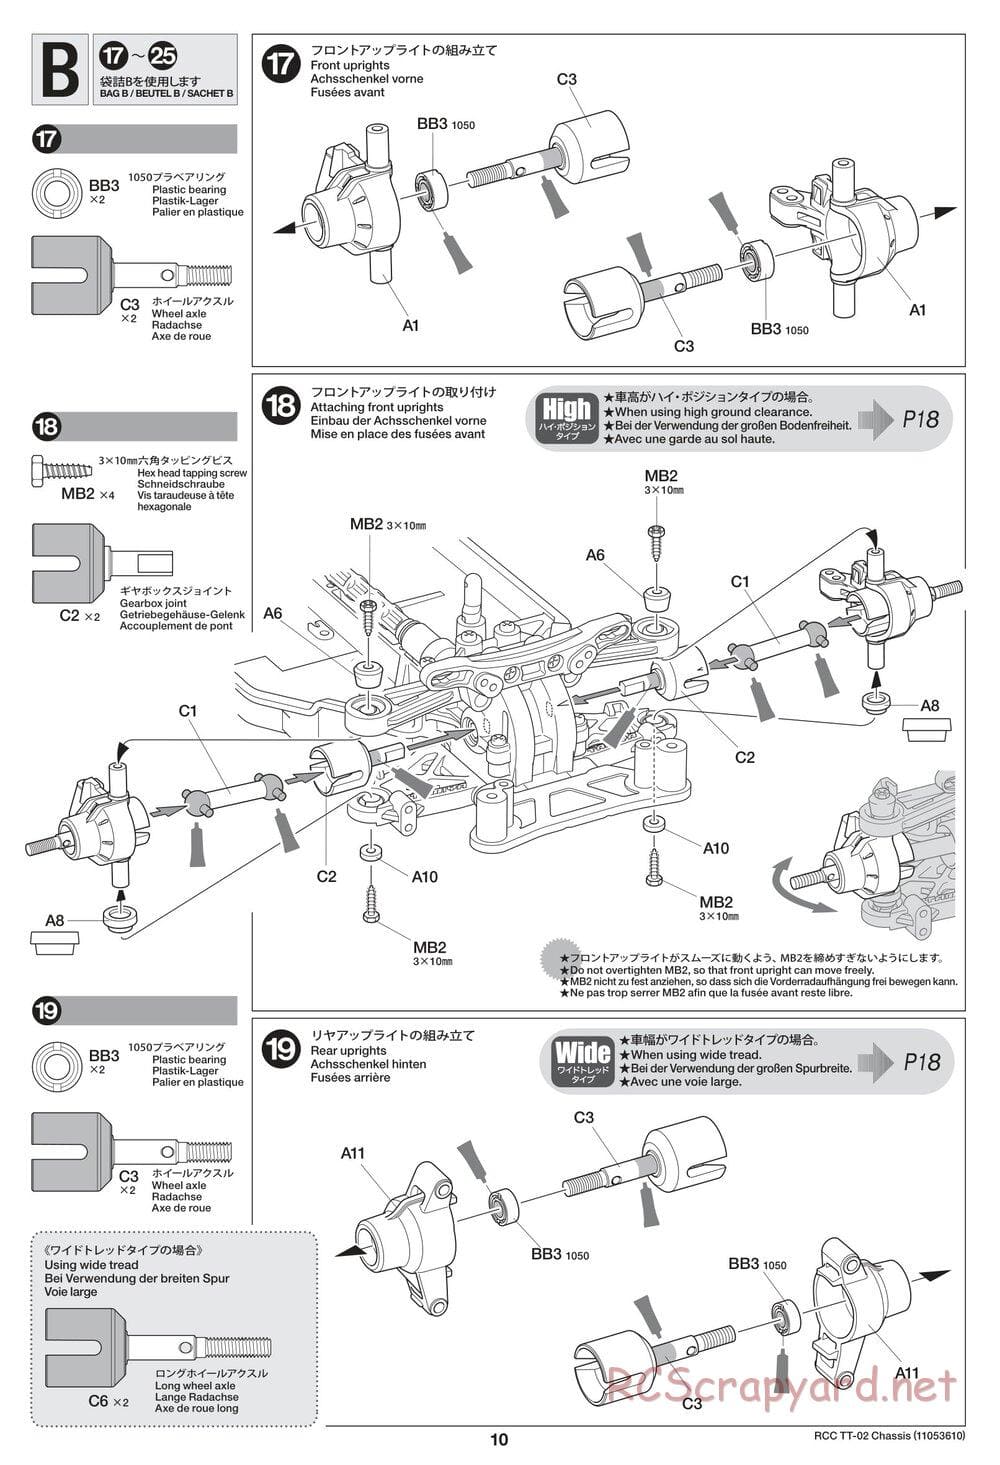 Tamiya - TT-02 Chassis - Manual - Page 10